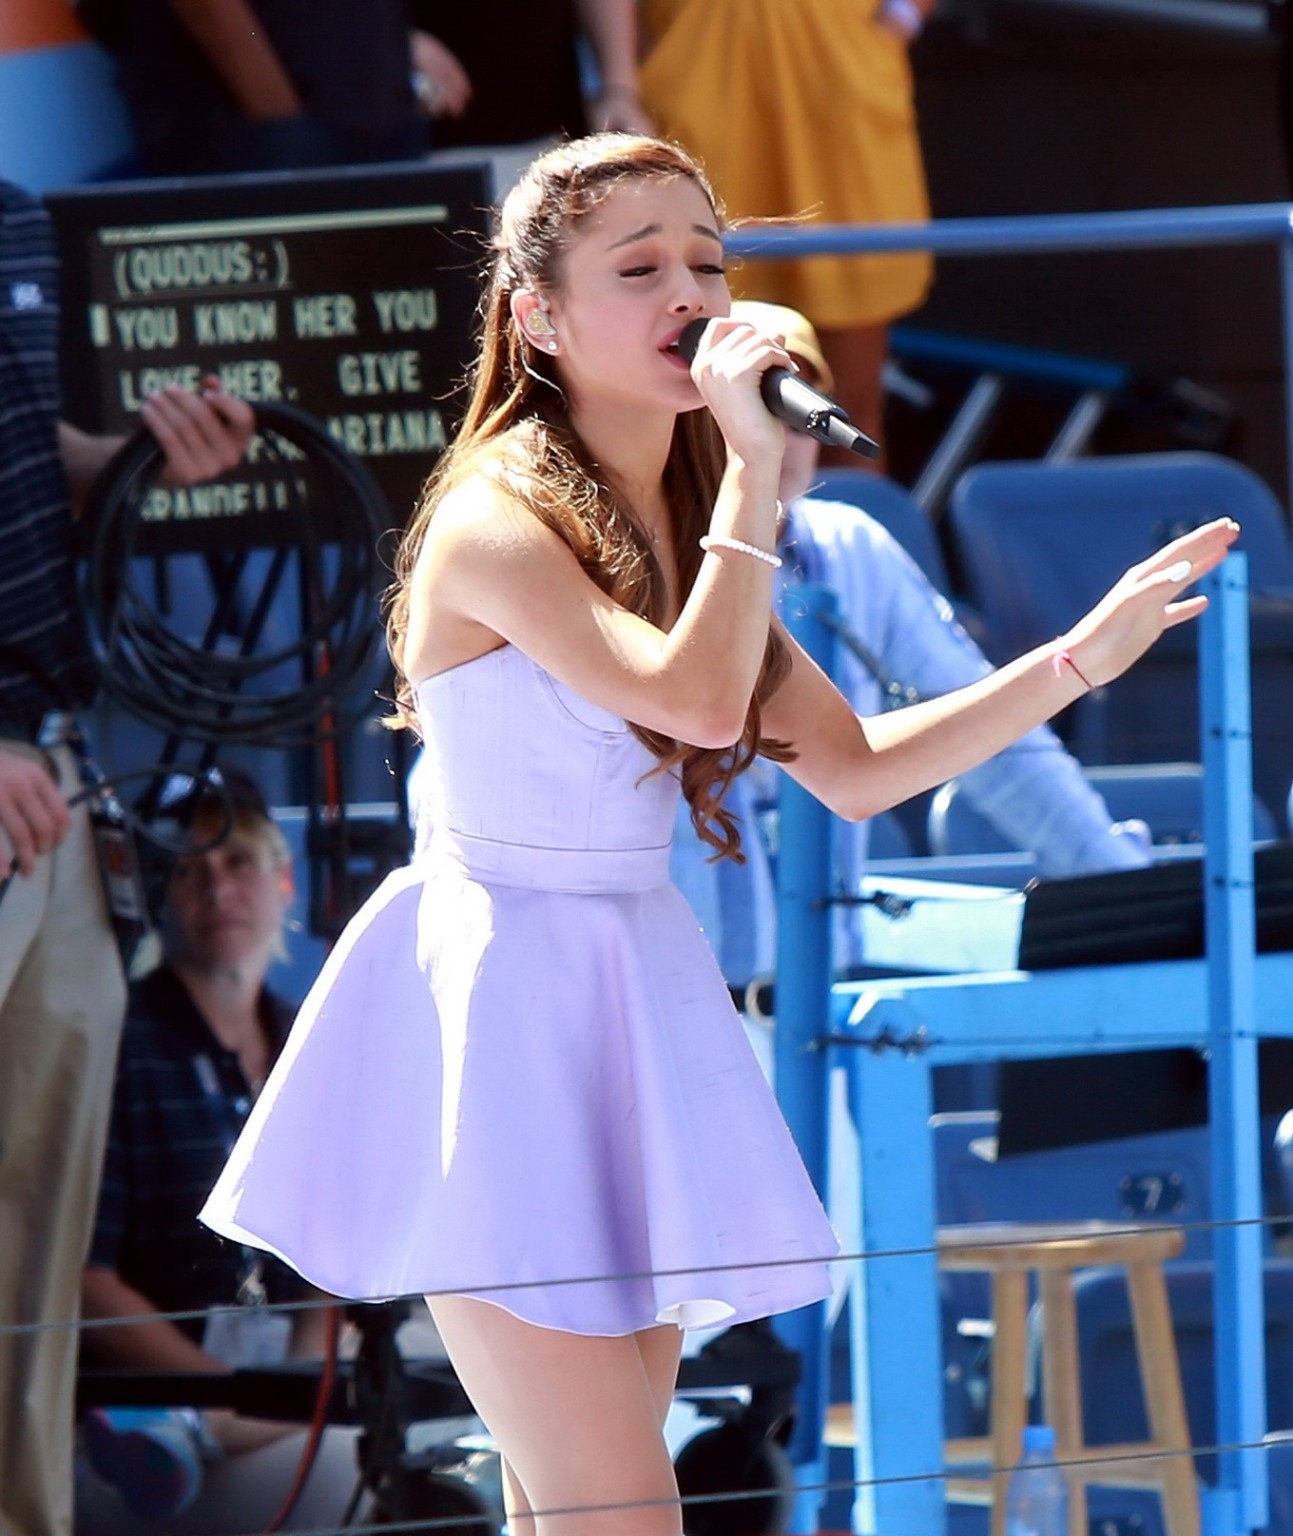 Ariana grande leggy actuando en el evento en nyc
 #75221003